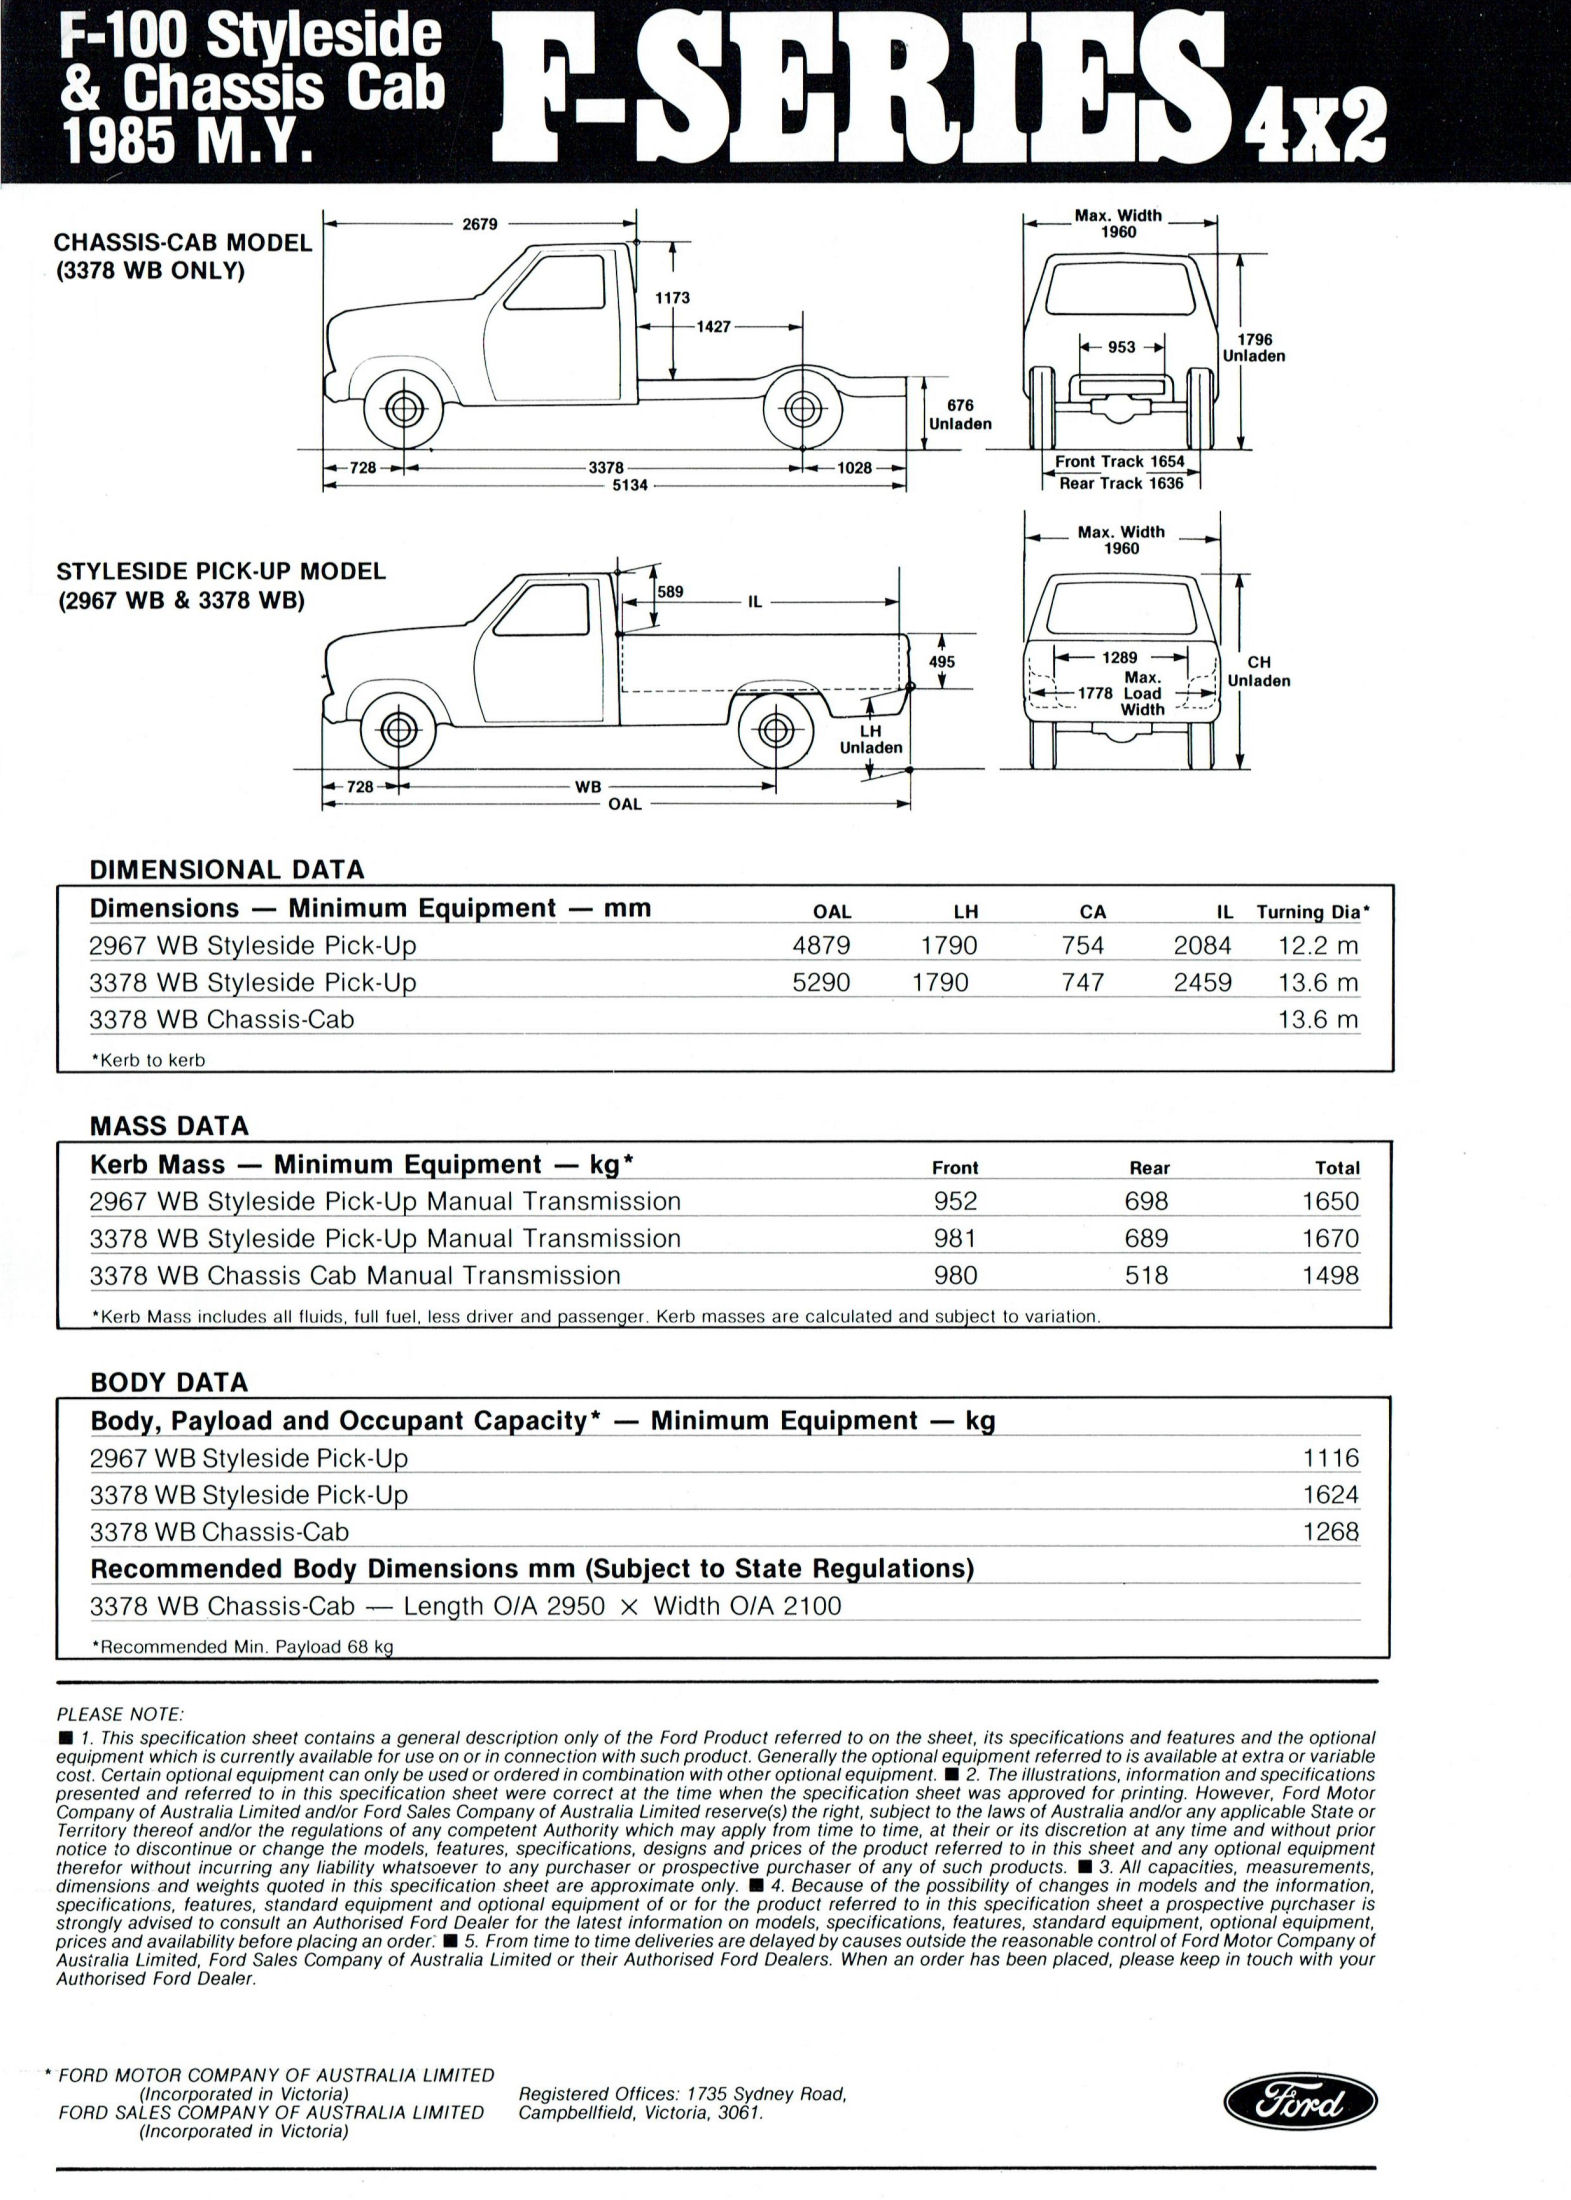 1985 Ford Truck Data Sheet (Aus)-03